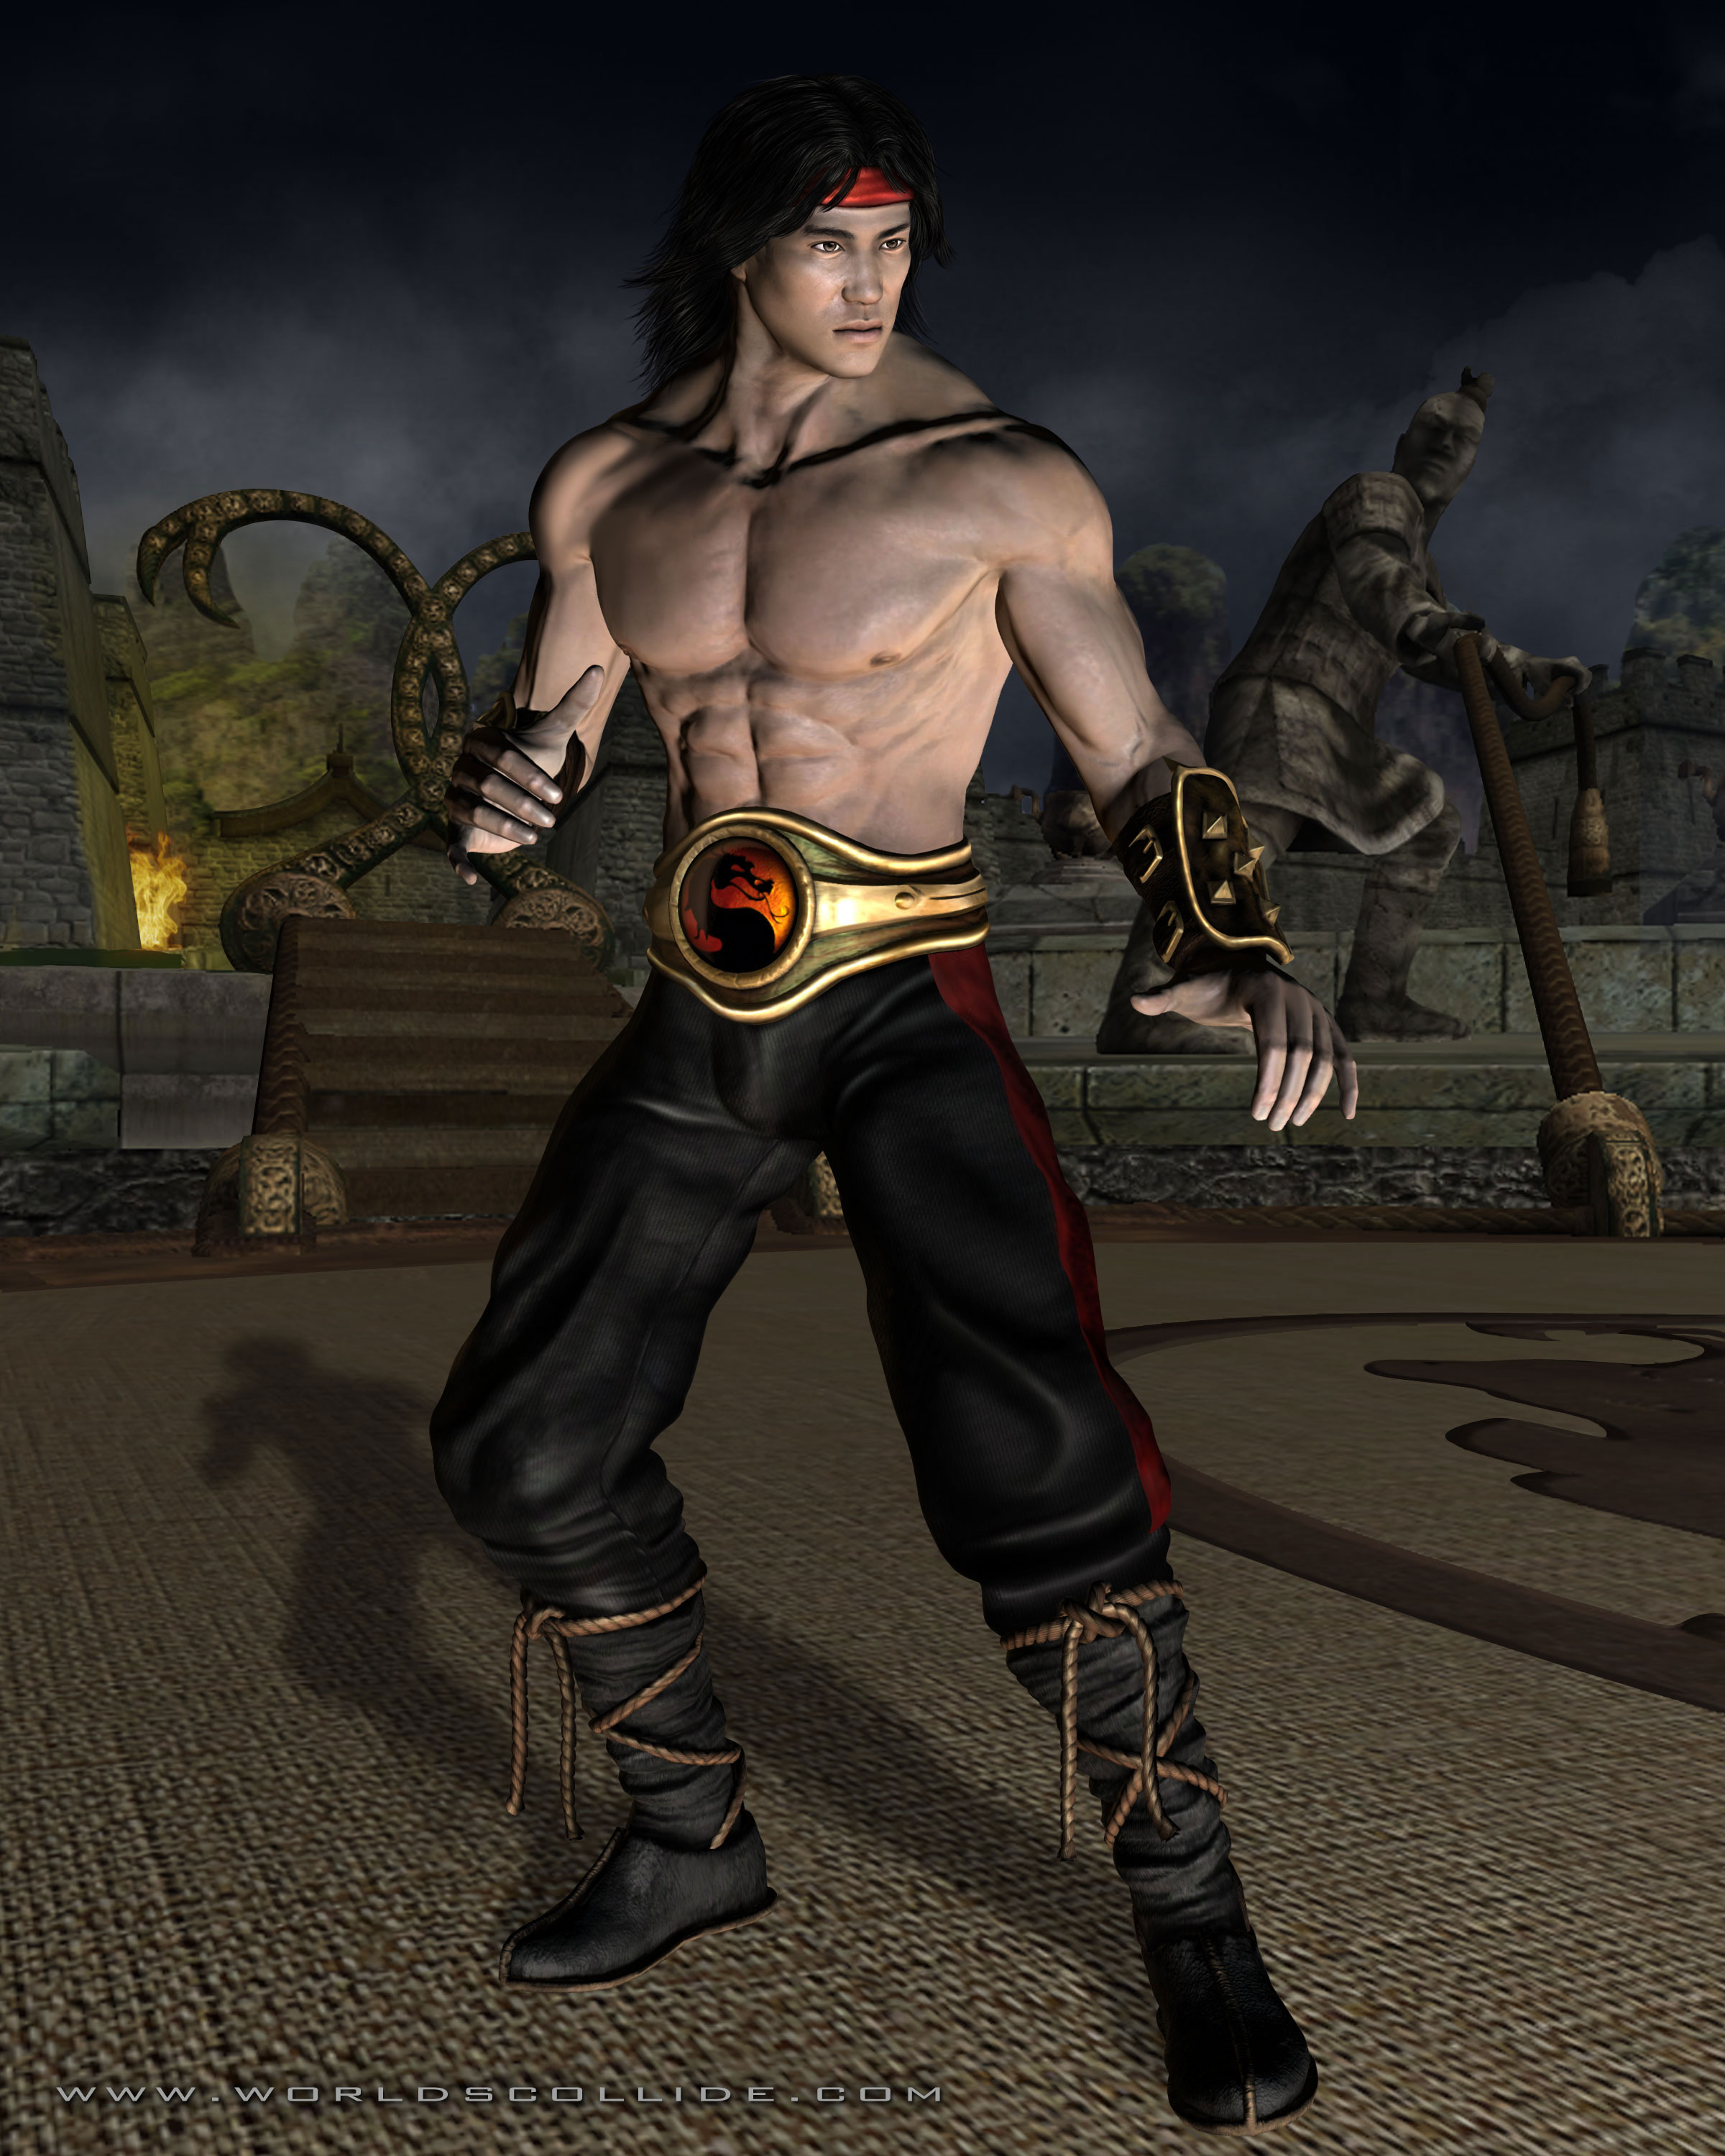 Mortal Kombat 1/Liu Kang - SuperCombo Wiki